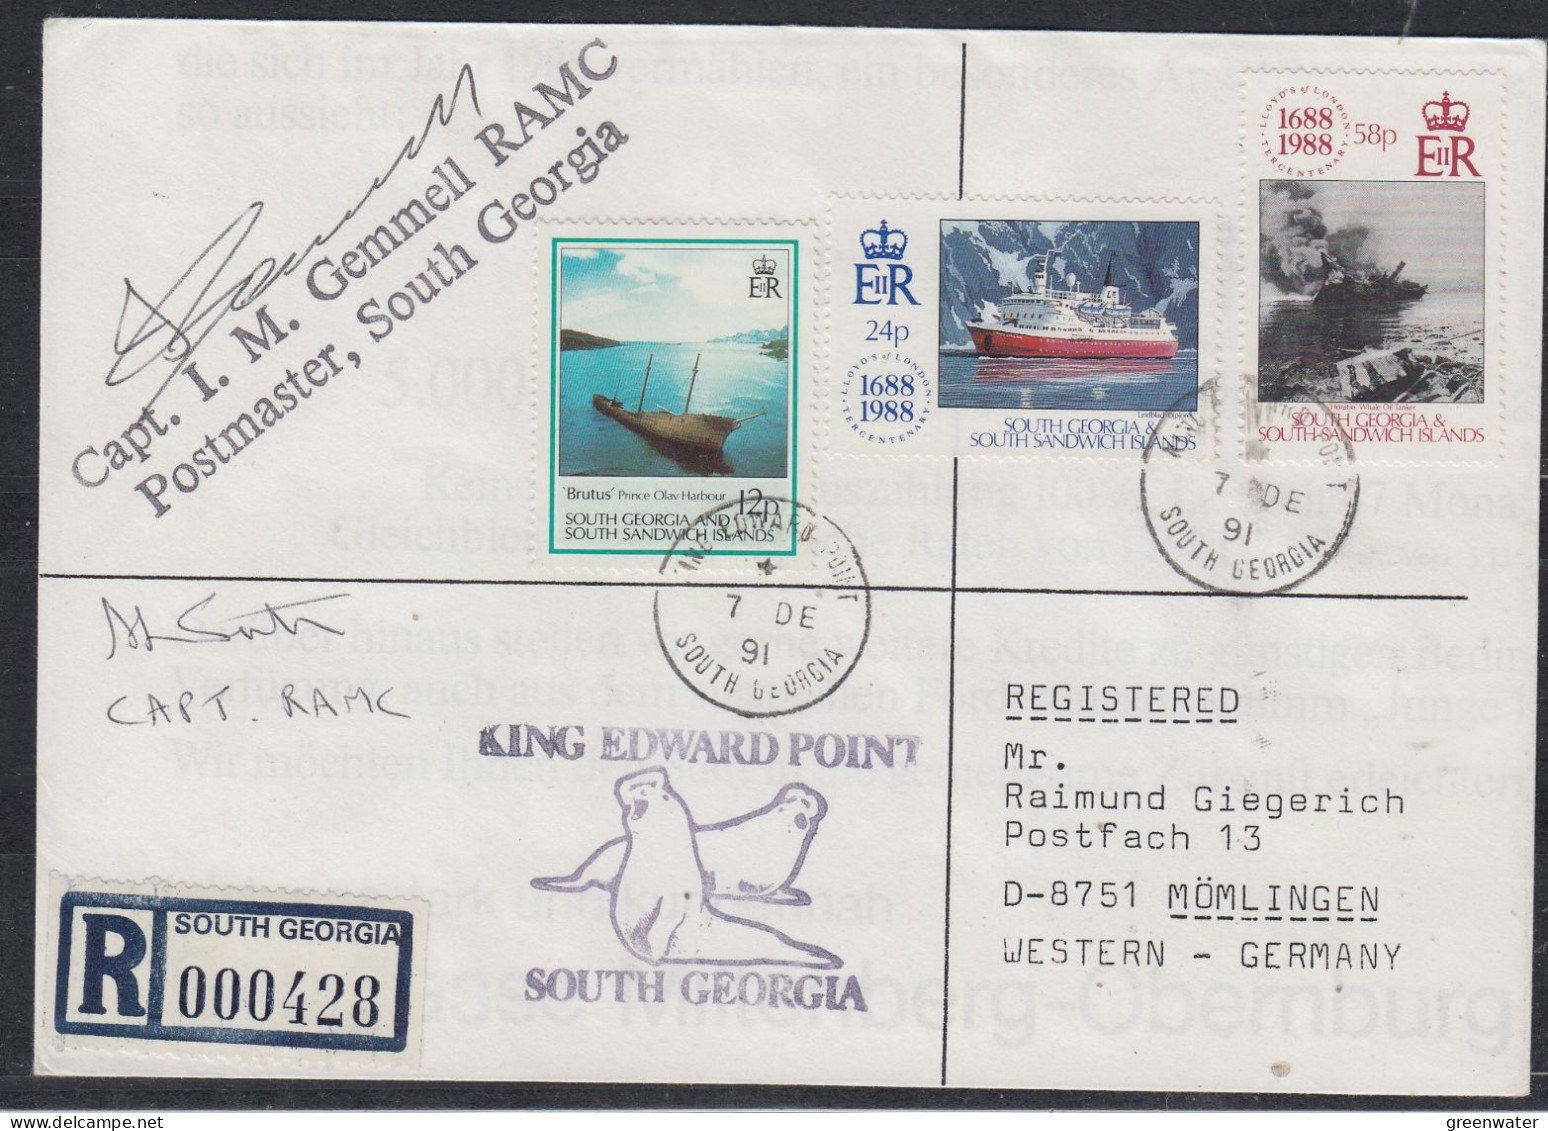 South Georgia & South Sandwich Islands 1991 Registered Cover 2  Signatures  Ca 7 DE 1991 (FG178) - Géorgie Du Sud